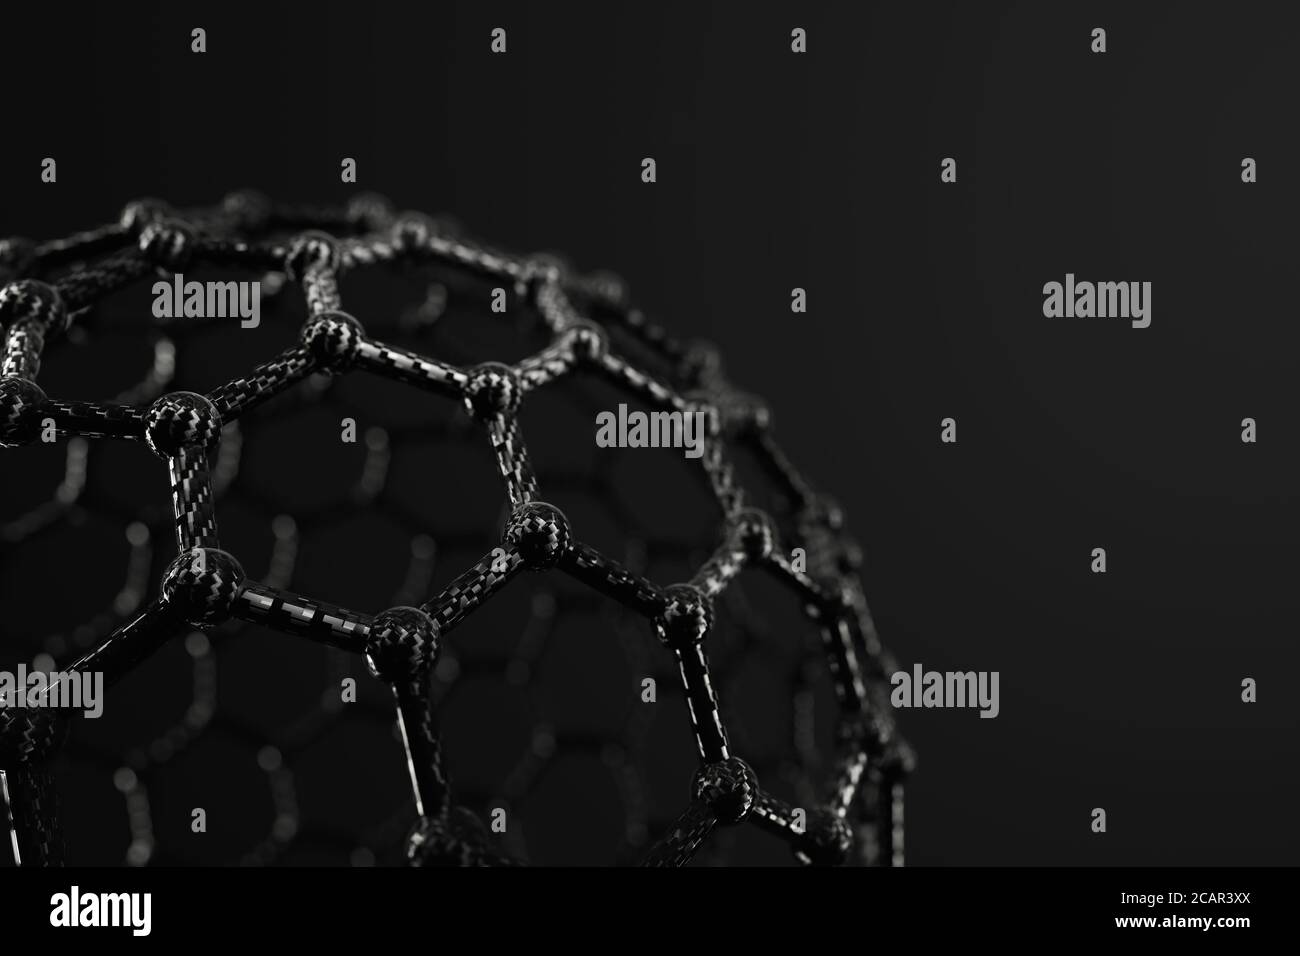 3D rendering of fullerene ball on black background Stock Photo